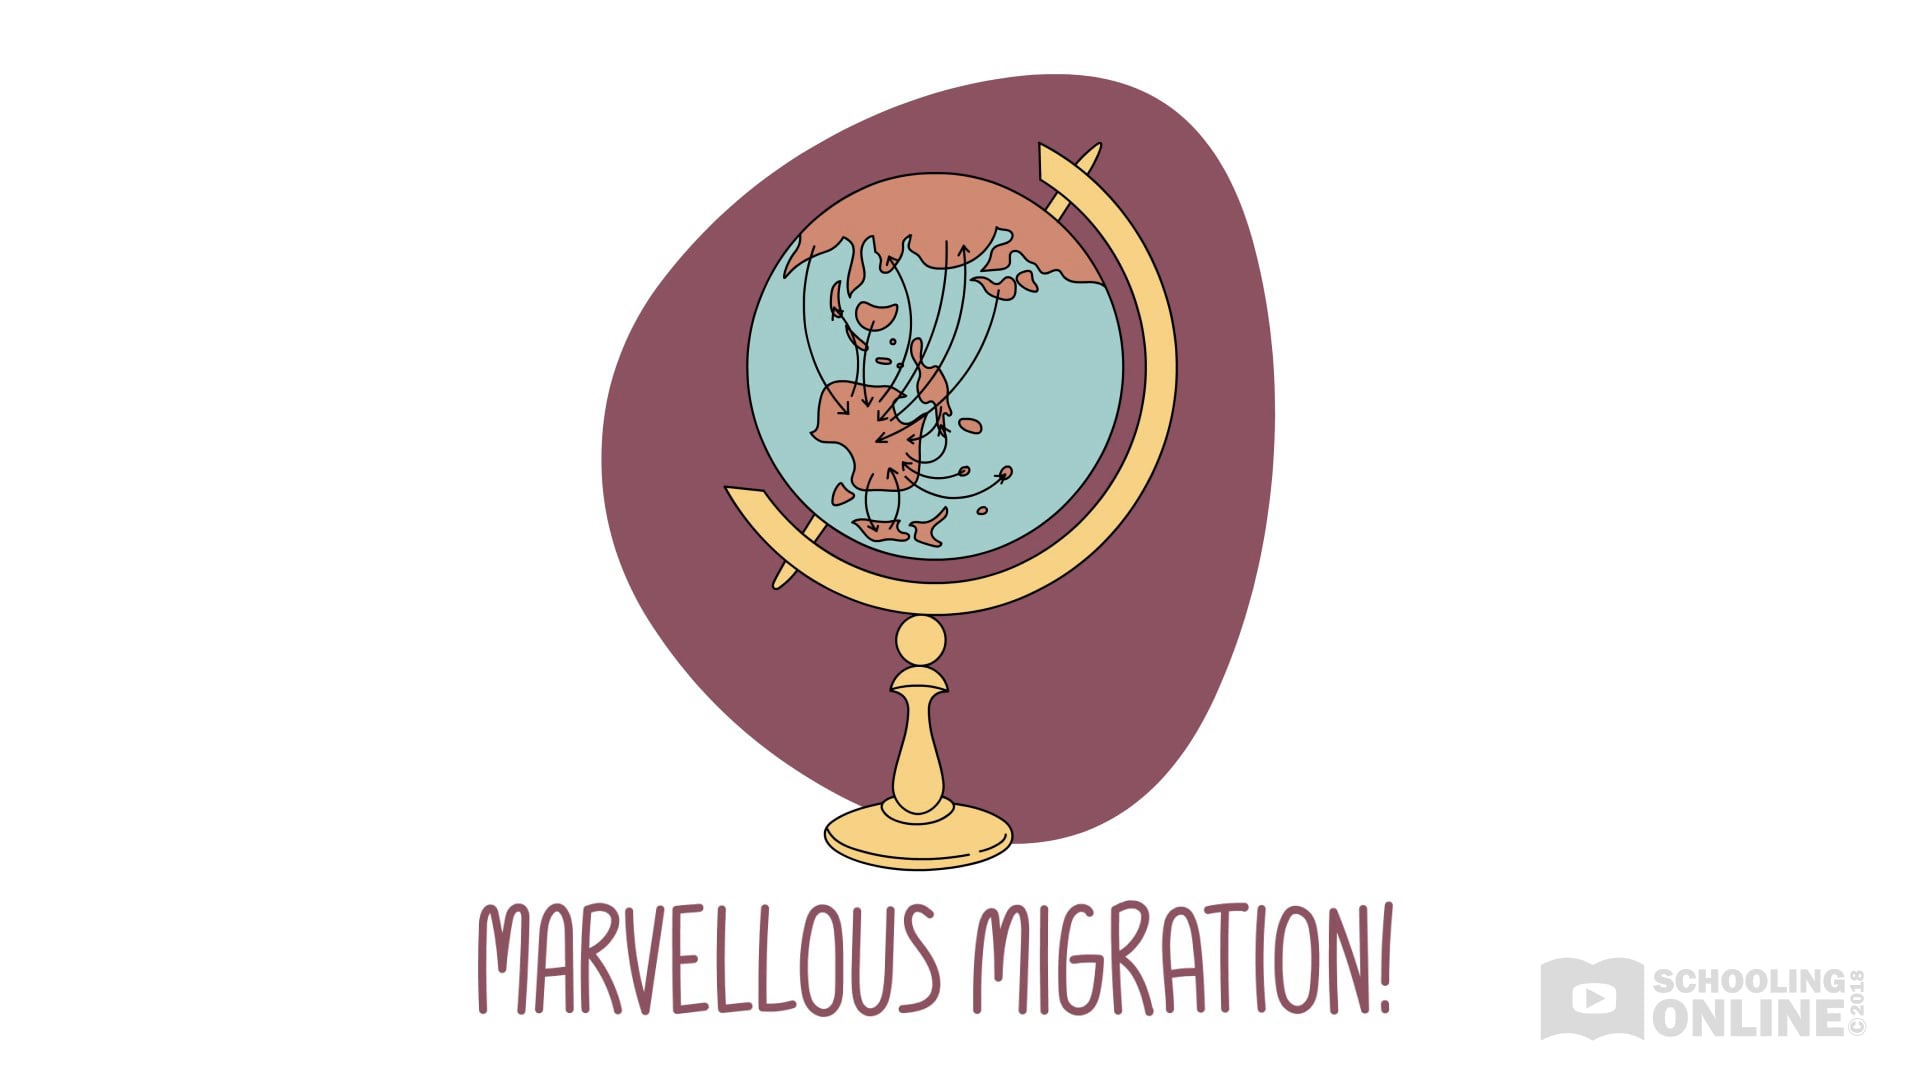 Australia as a Nation 4 - Marvellous Migration!